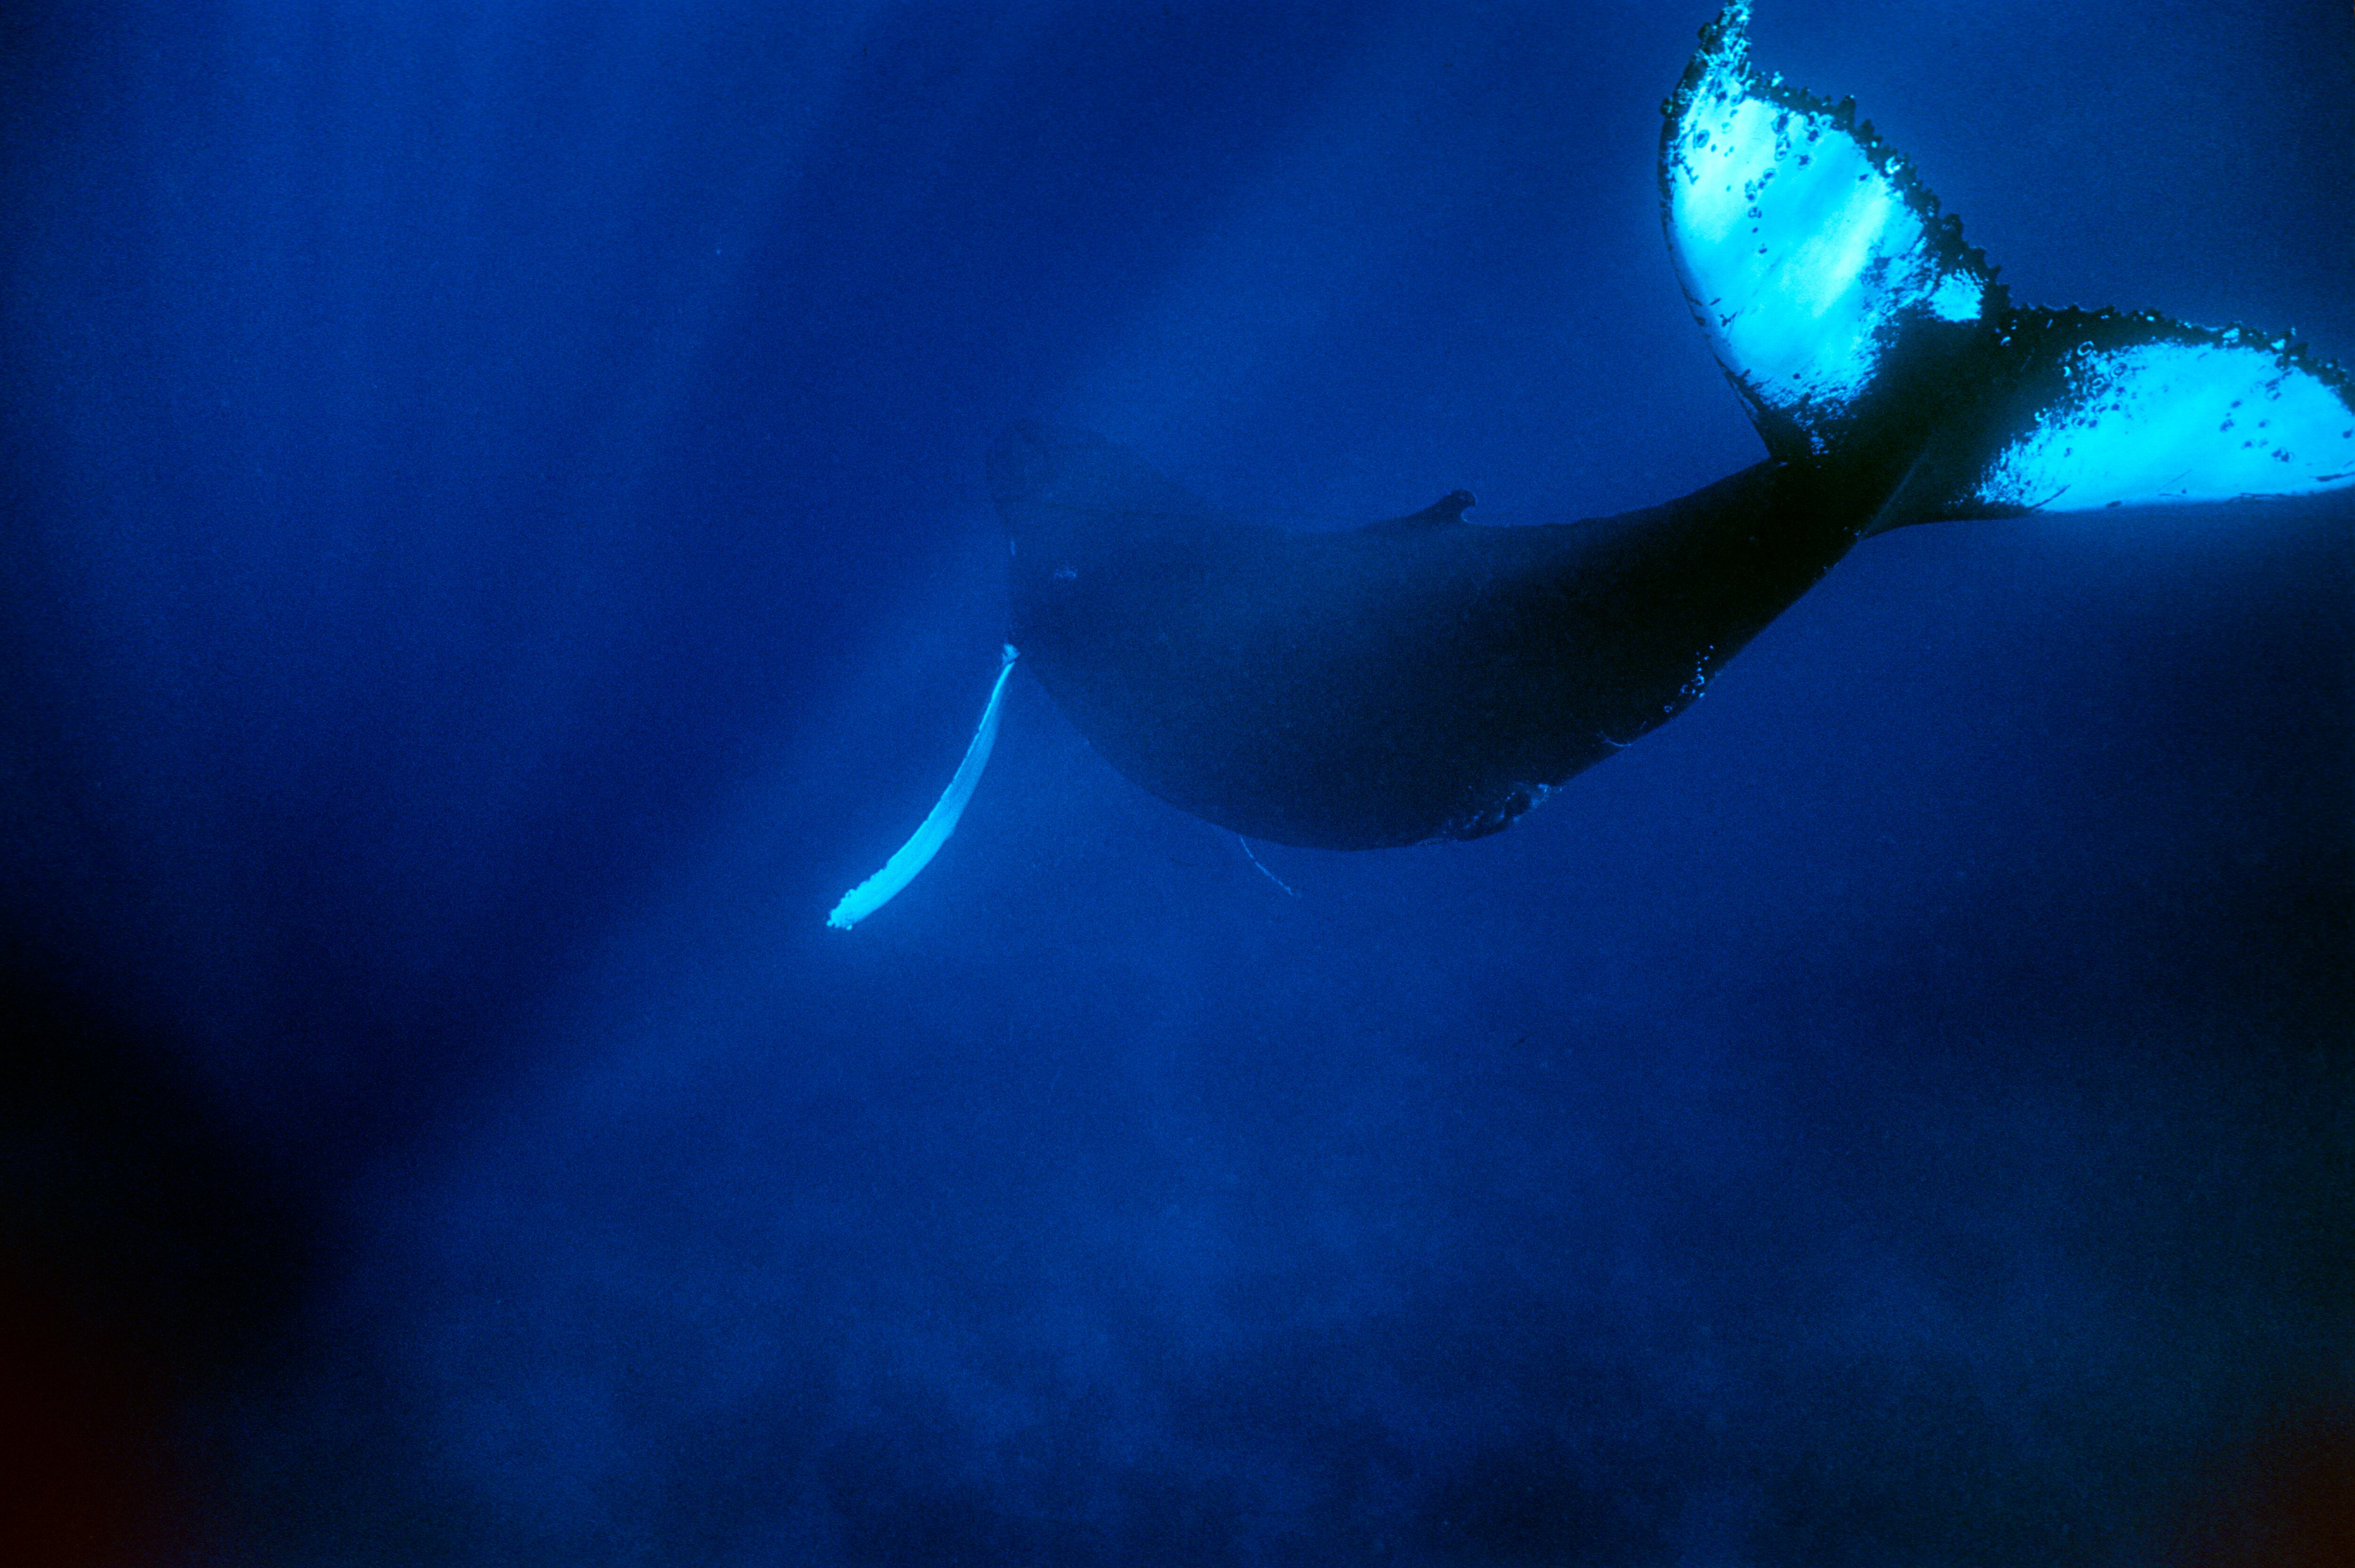 Una ballena jorobada del Atlántico en el santuario de ballenas de Silver Bank, República Dominicana.